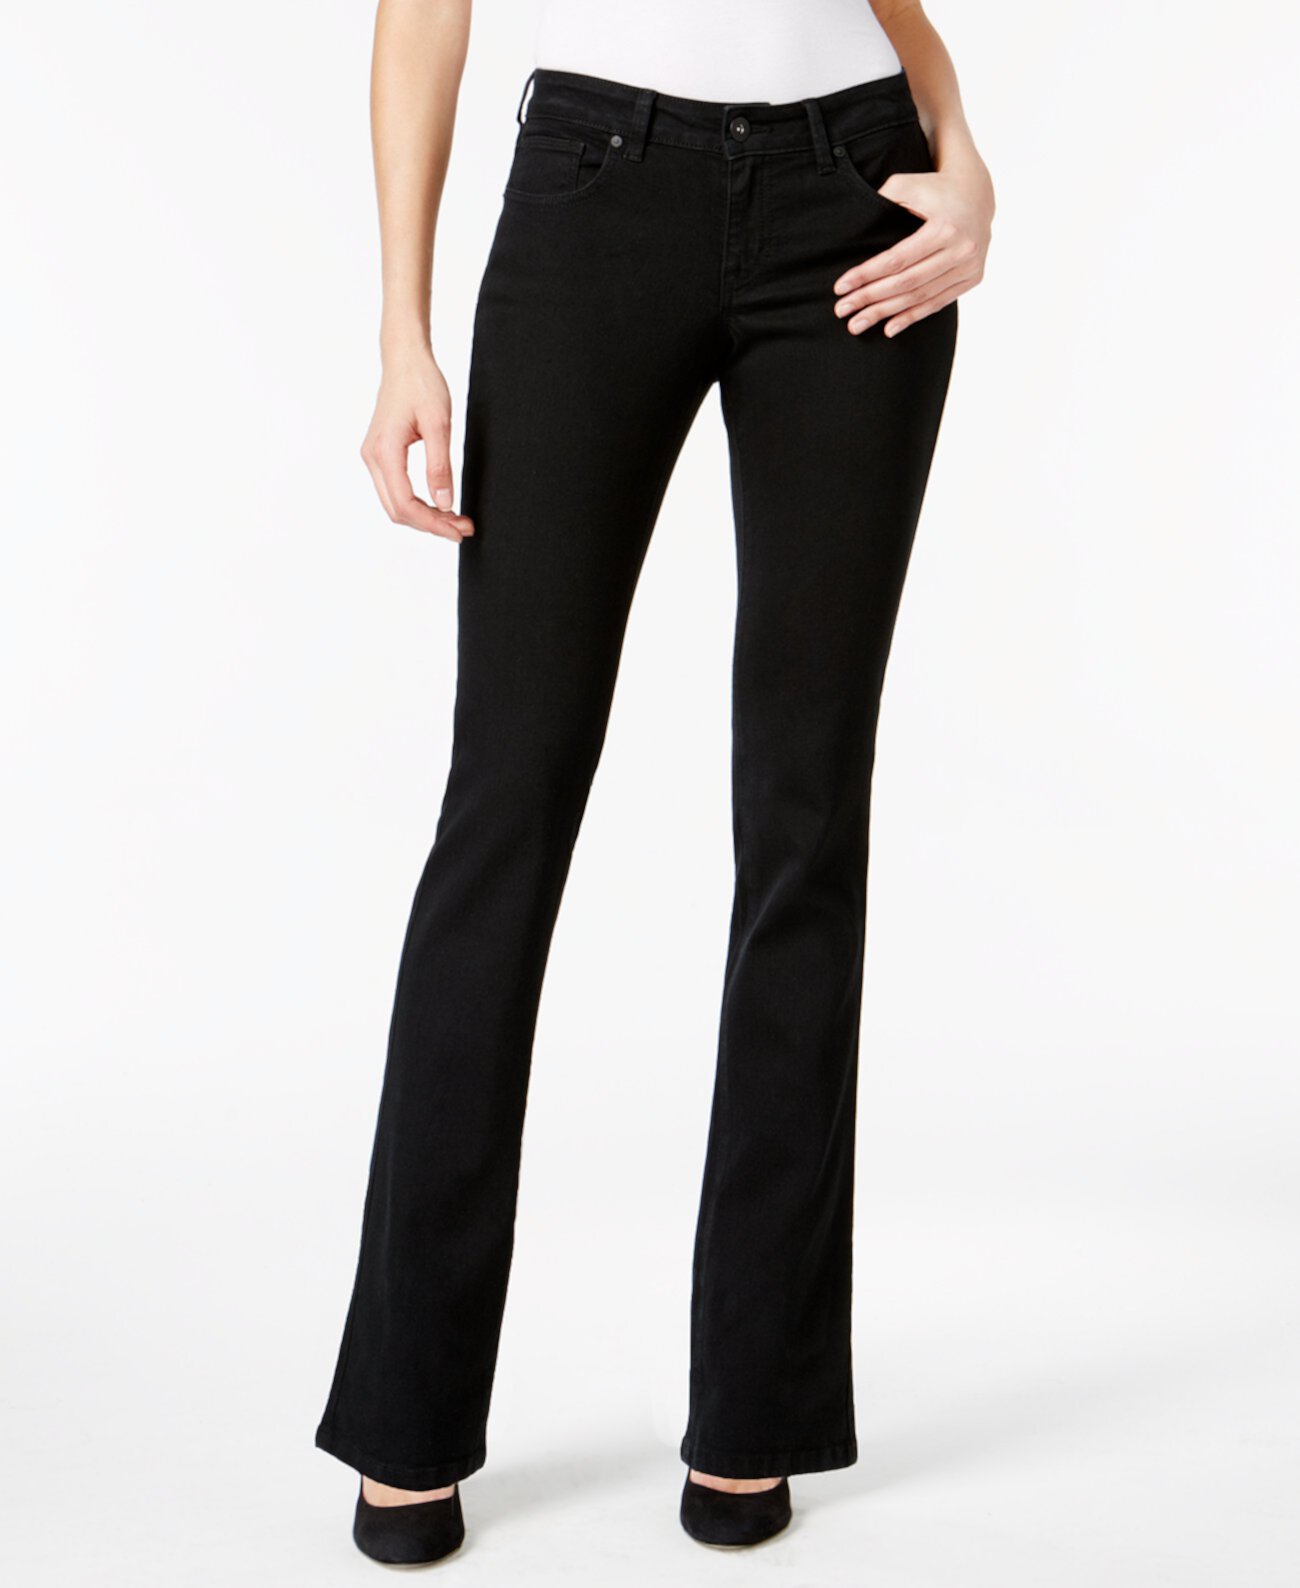 Соблазнительные джинсы Bootcut, созданные для Macy's Style & Co